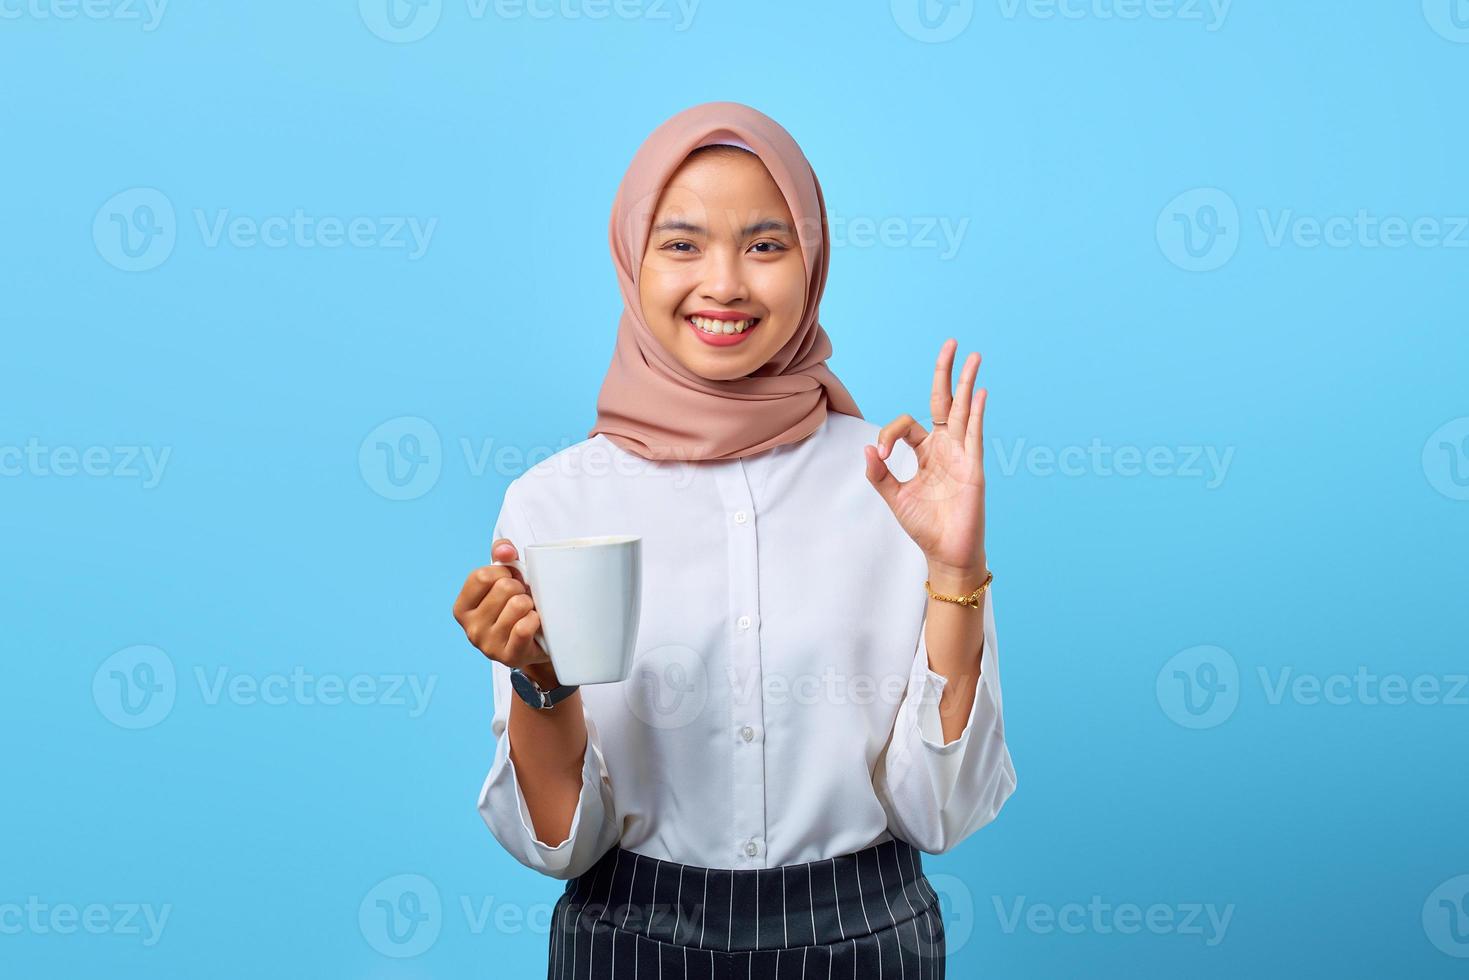 Porträt einer lächelnden jungen asiatischen Frau, die ein okayzeichen zeigt und eine Tasse auf blauem Hintergrund hält foto